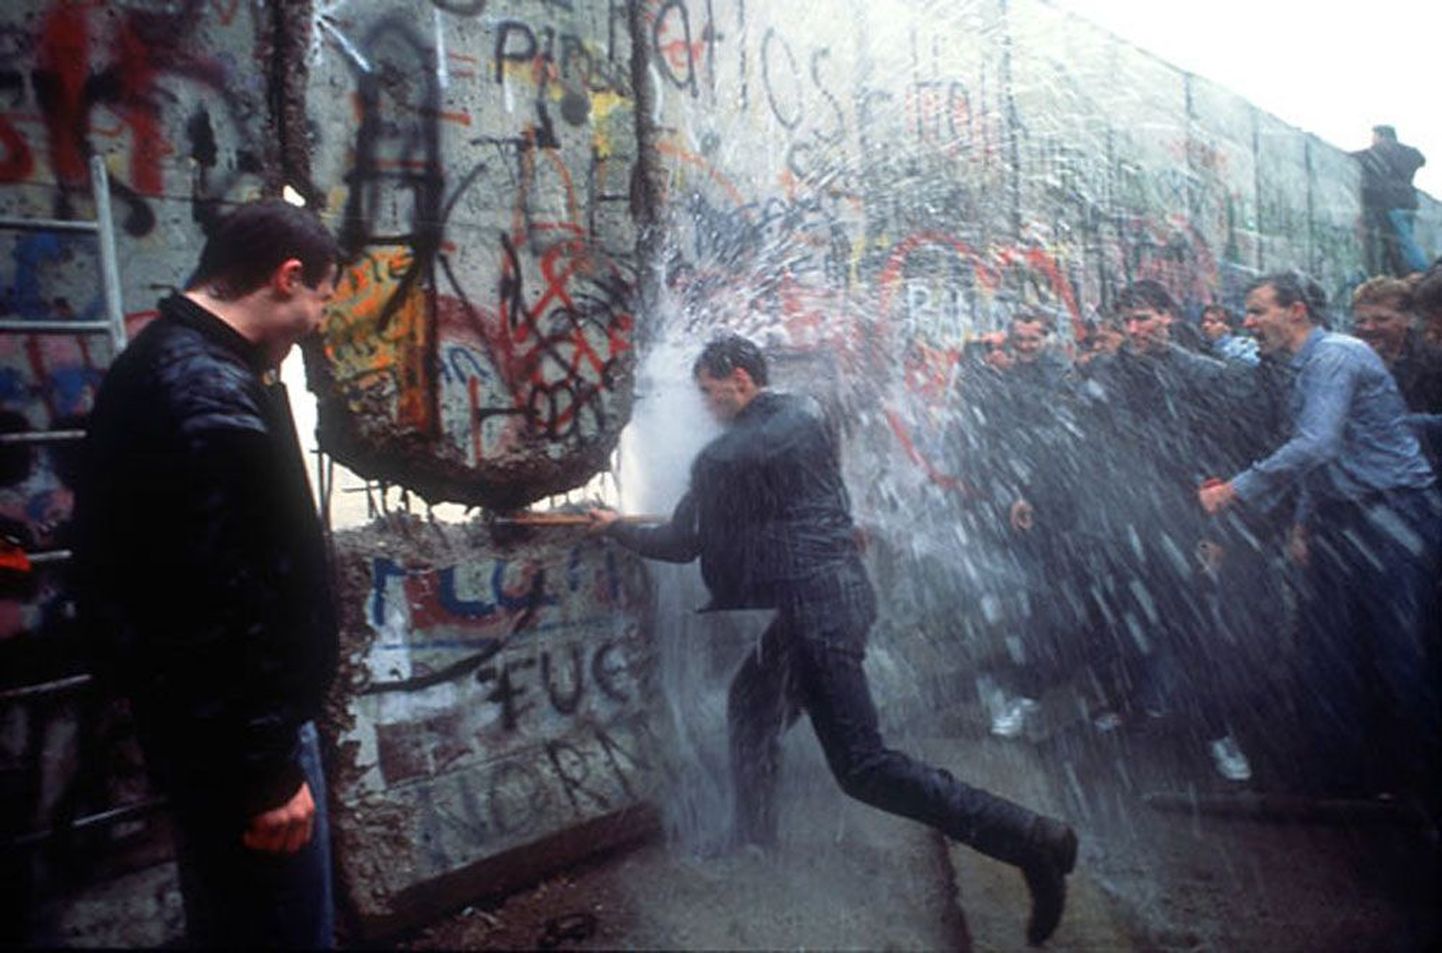 Падение Берлинской стены. 9 ноября 1989 года немцы разрушили стену, разделявшую народ около 30 лет. Позже Берлинская стена стала символом освобождения всей Восточной Европы.